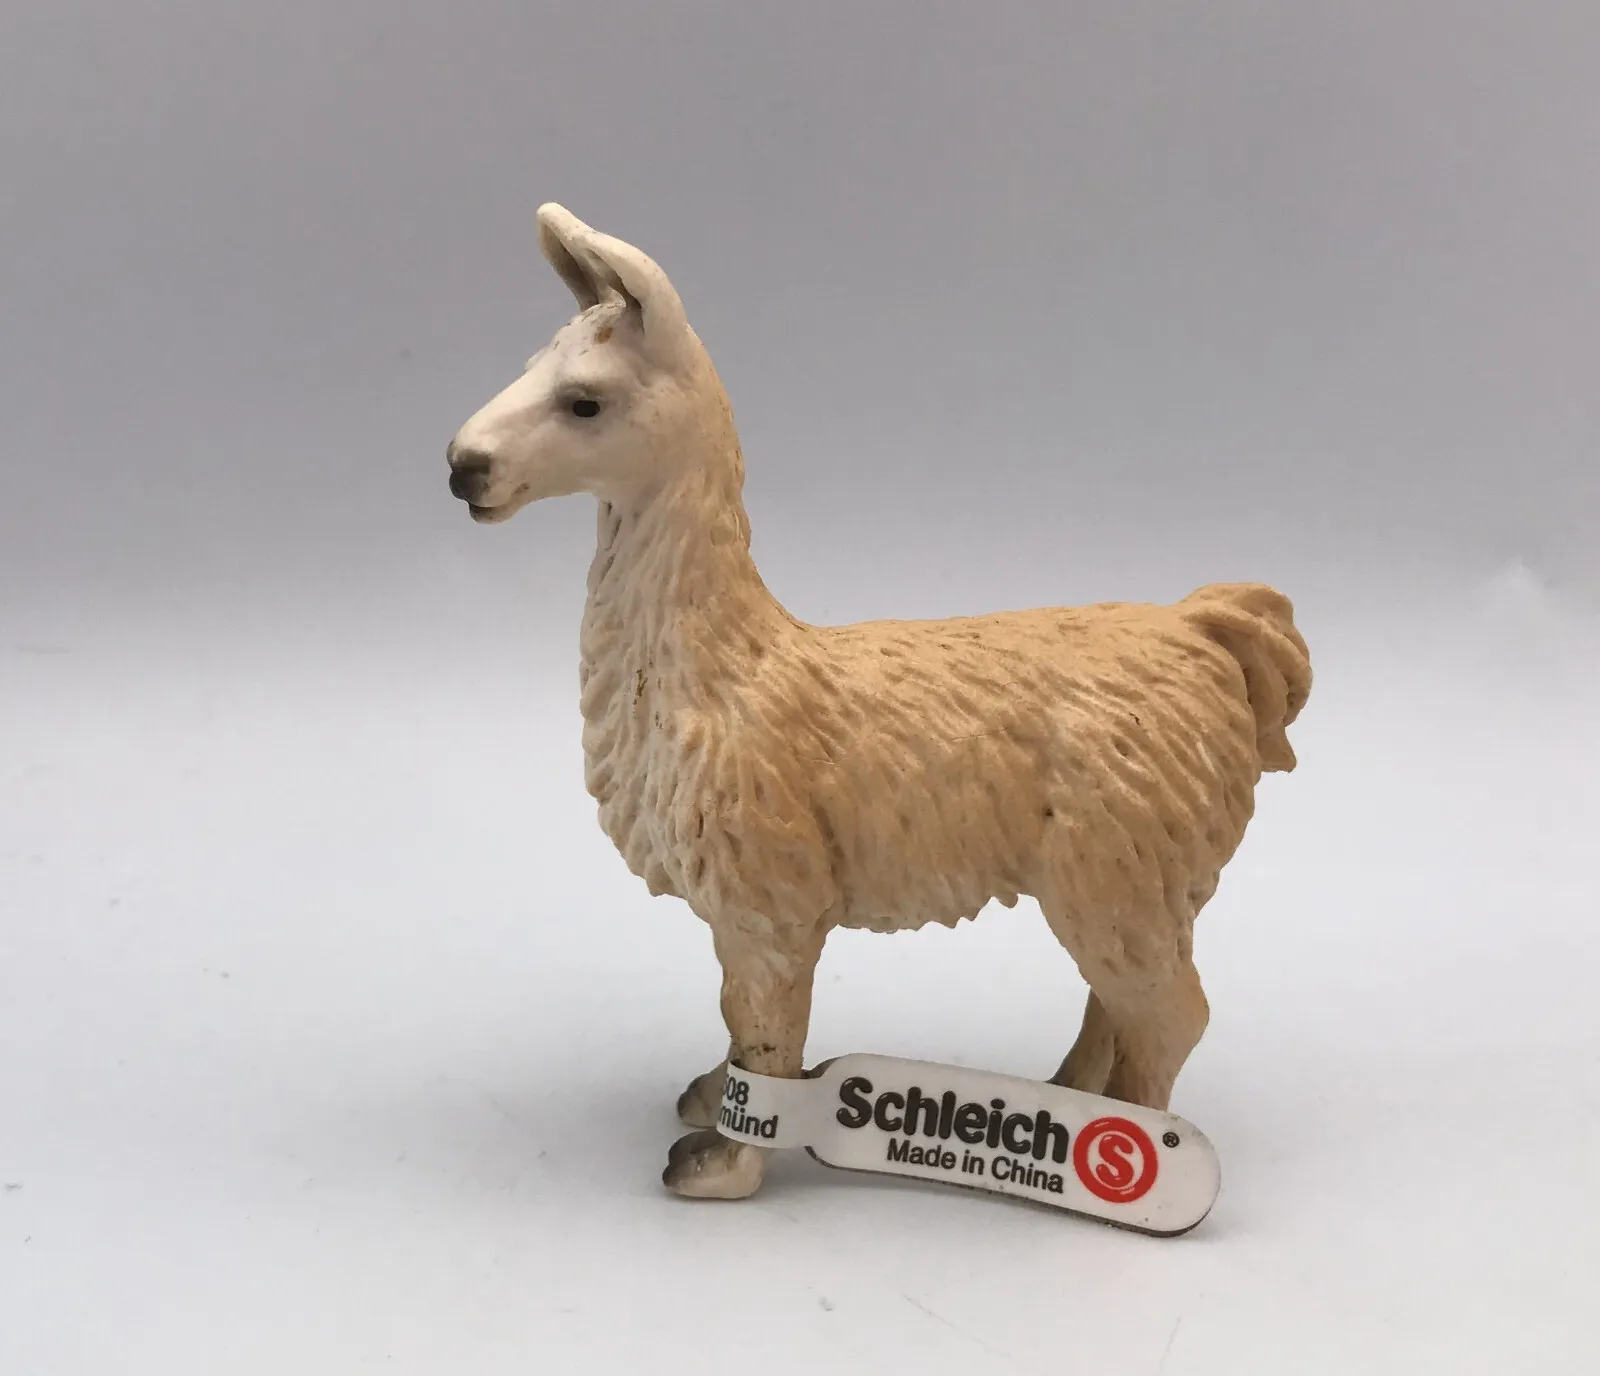 Schleich Llama 2001 Farm Animal Figure 14301